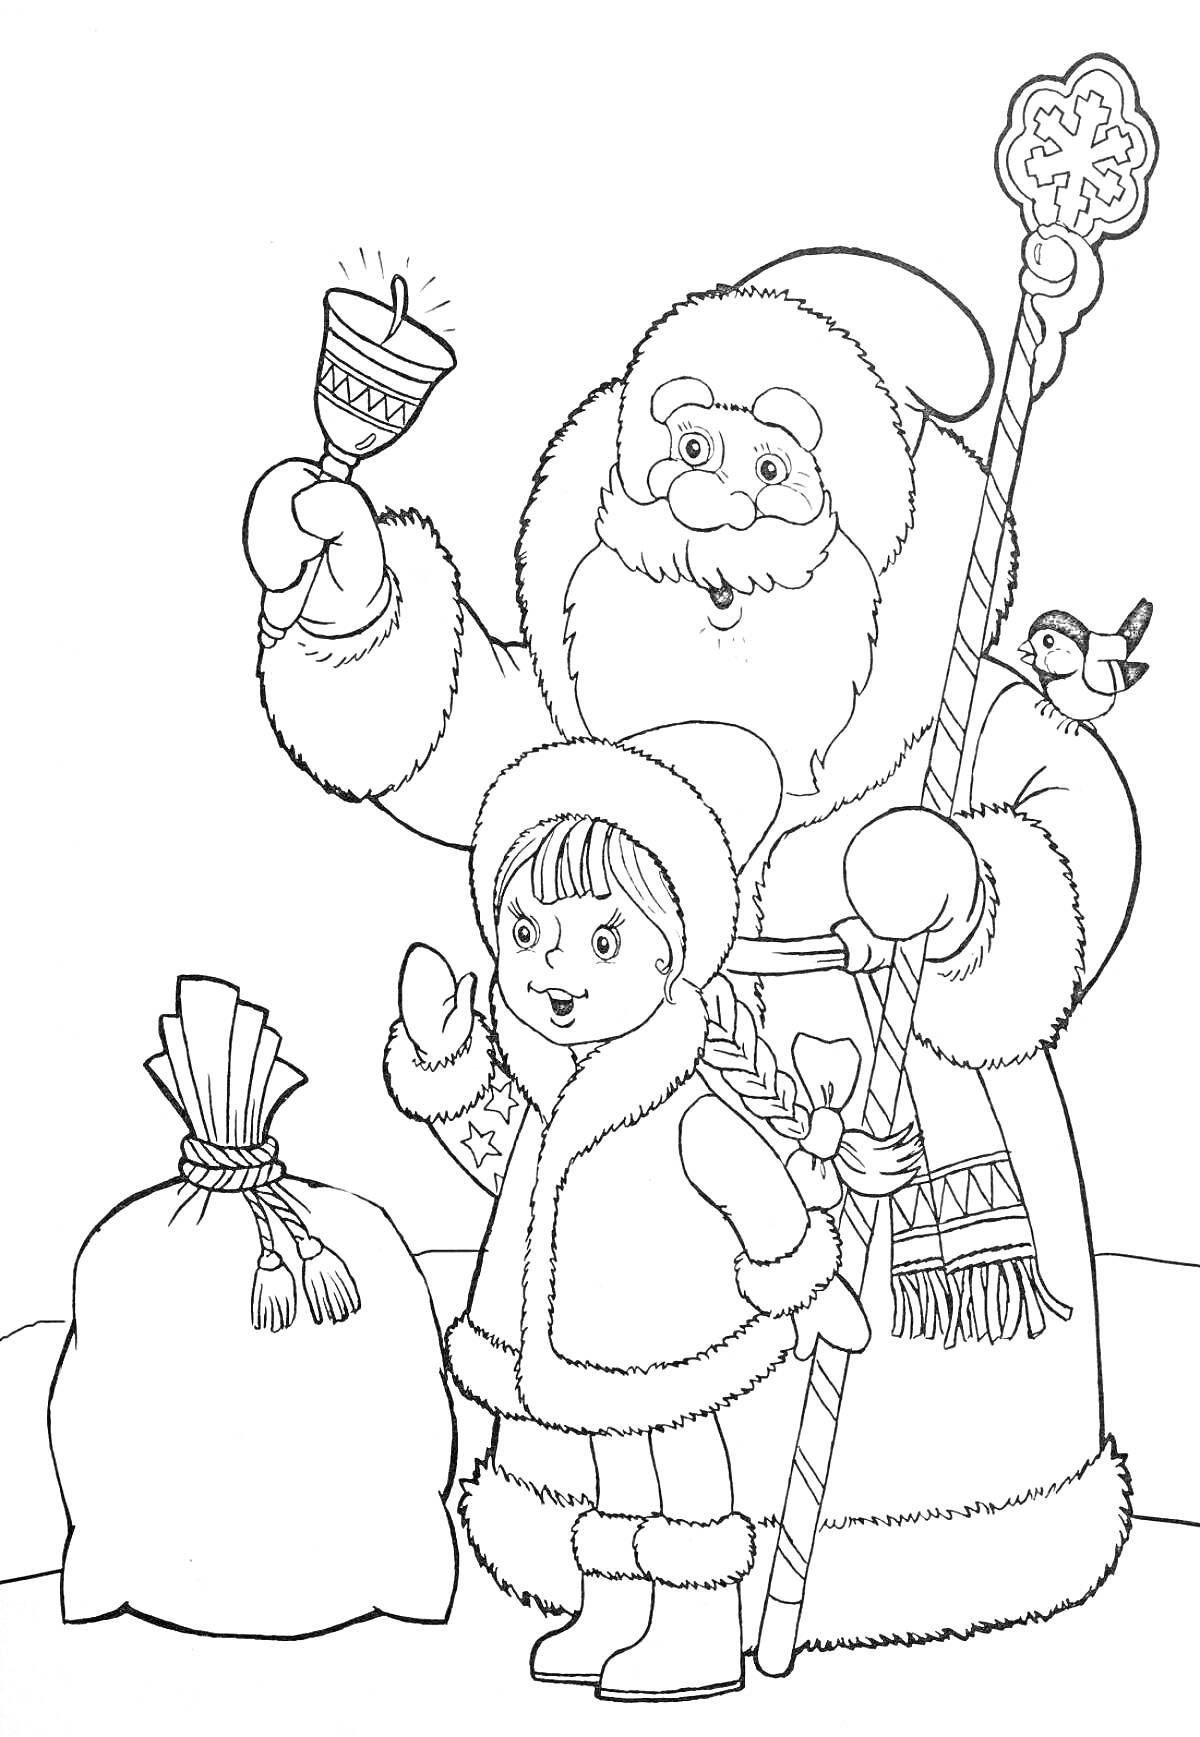 Дед Мороз с посохом и колокольчиком, Снегурочка, мешок с подарками, снегирь